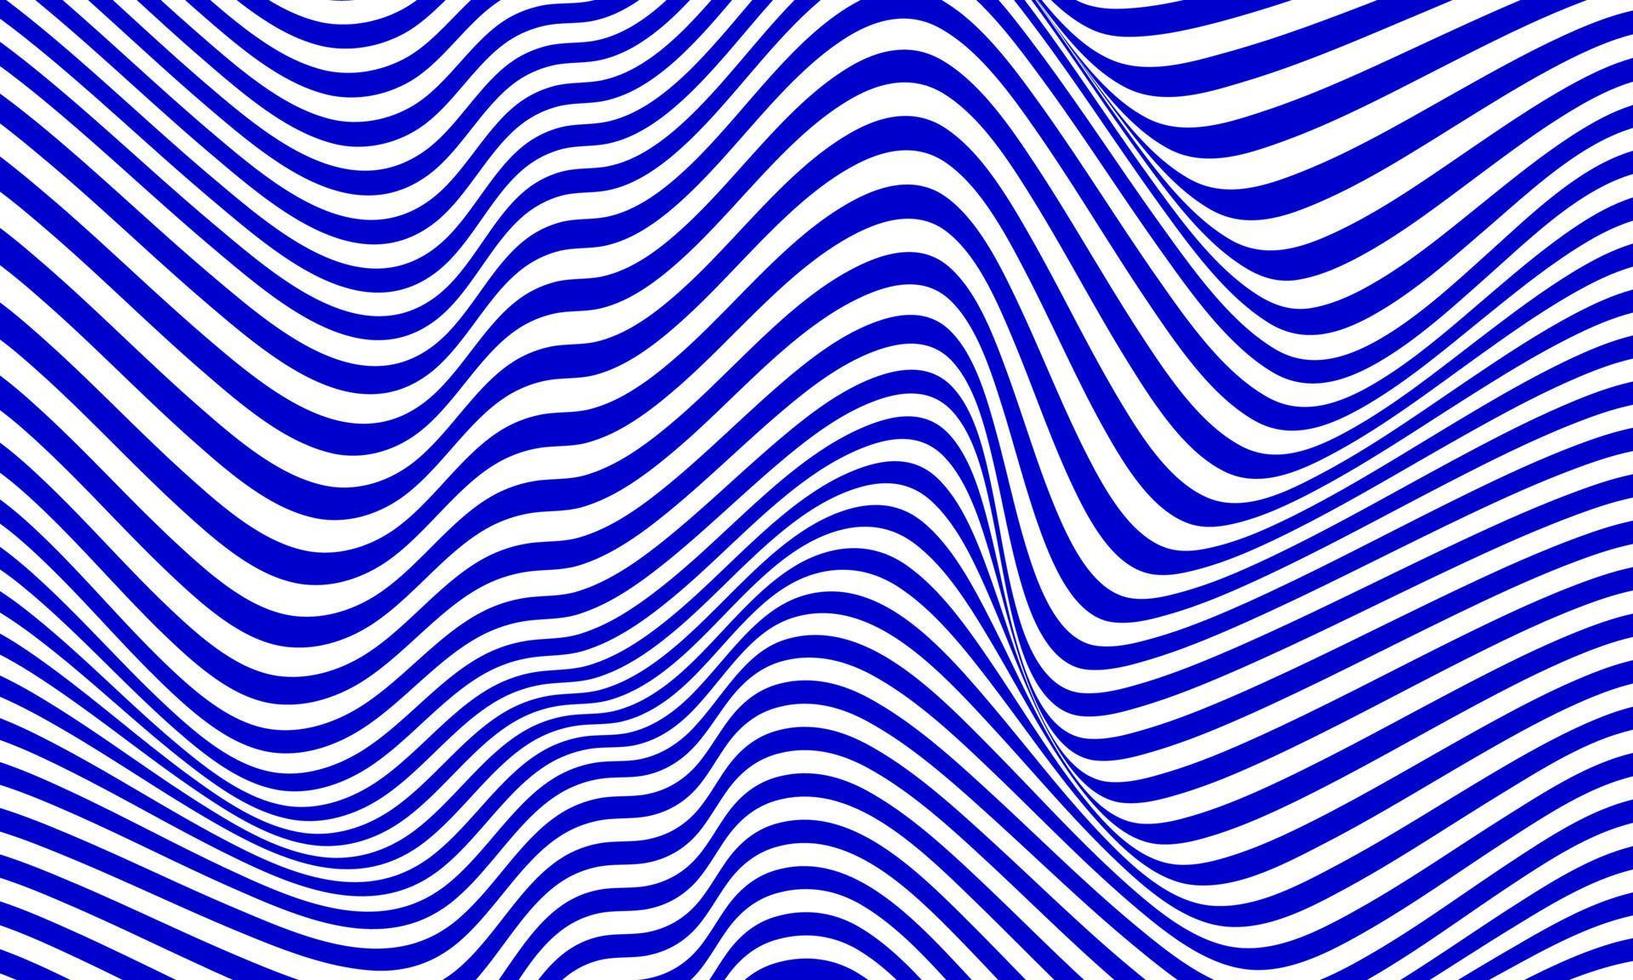 fundo de listra abstrato em branco e azul com padrão de linhas onduladas. vetor